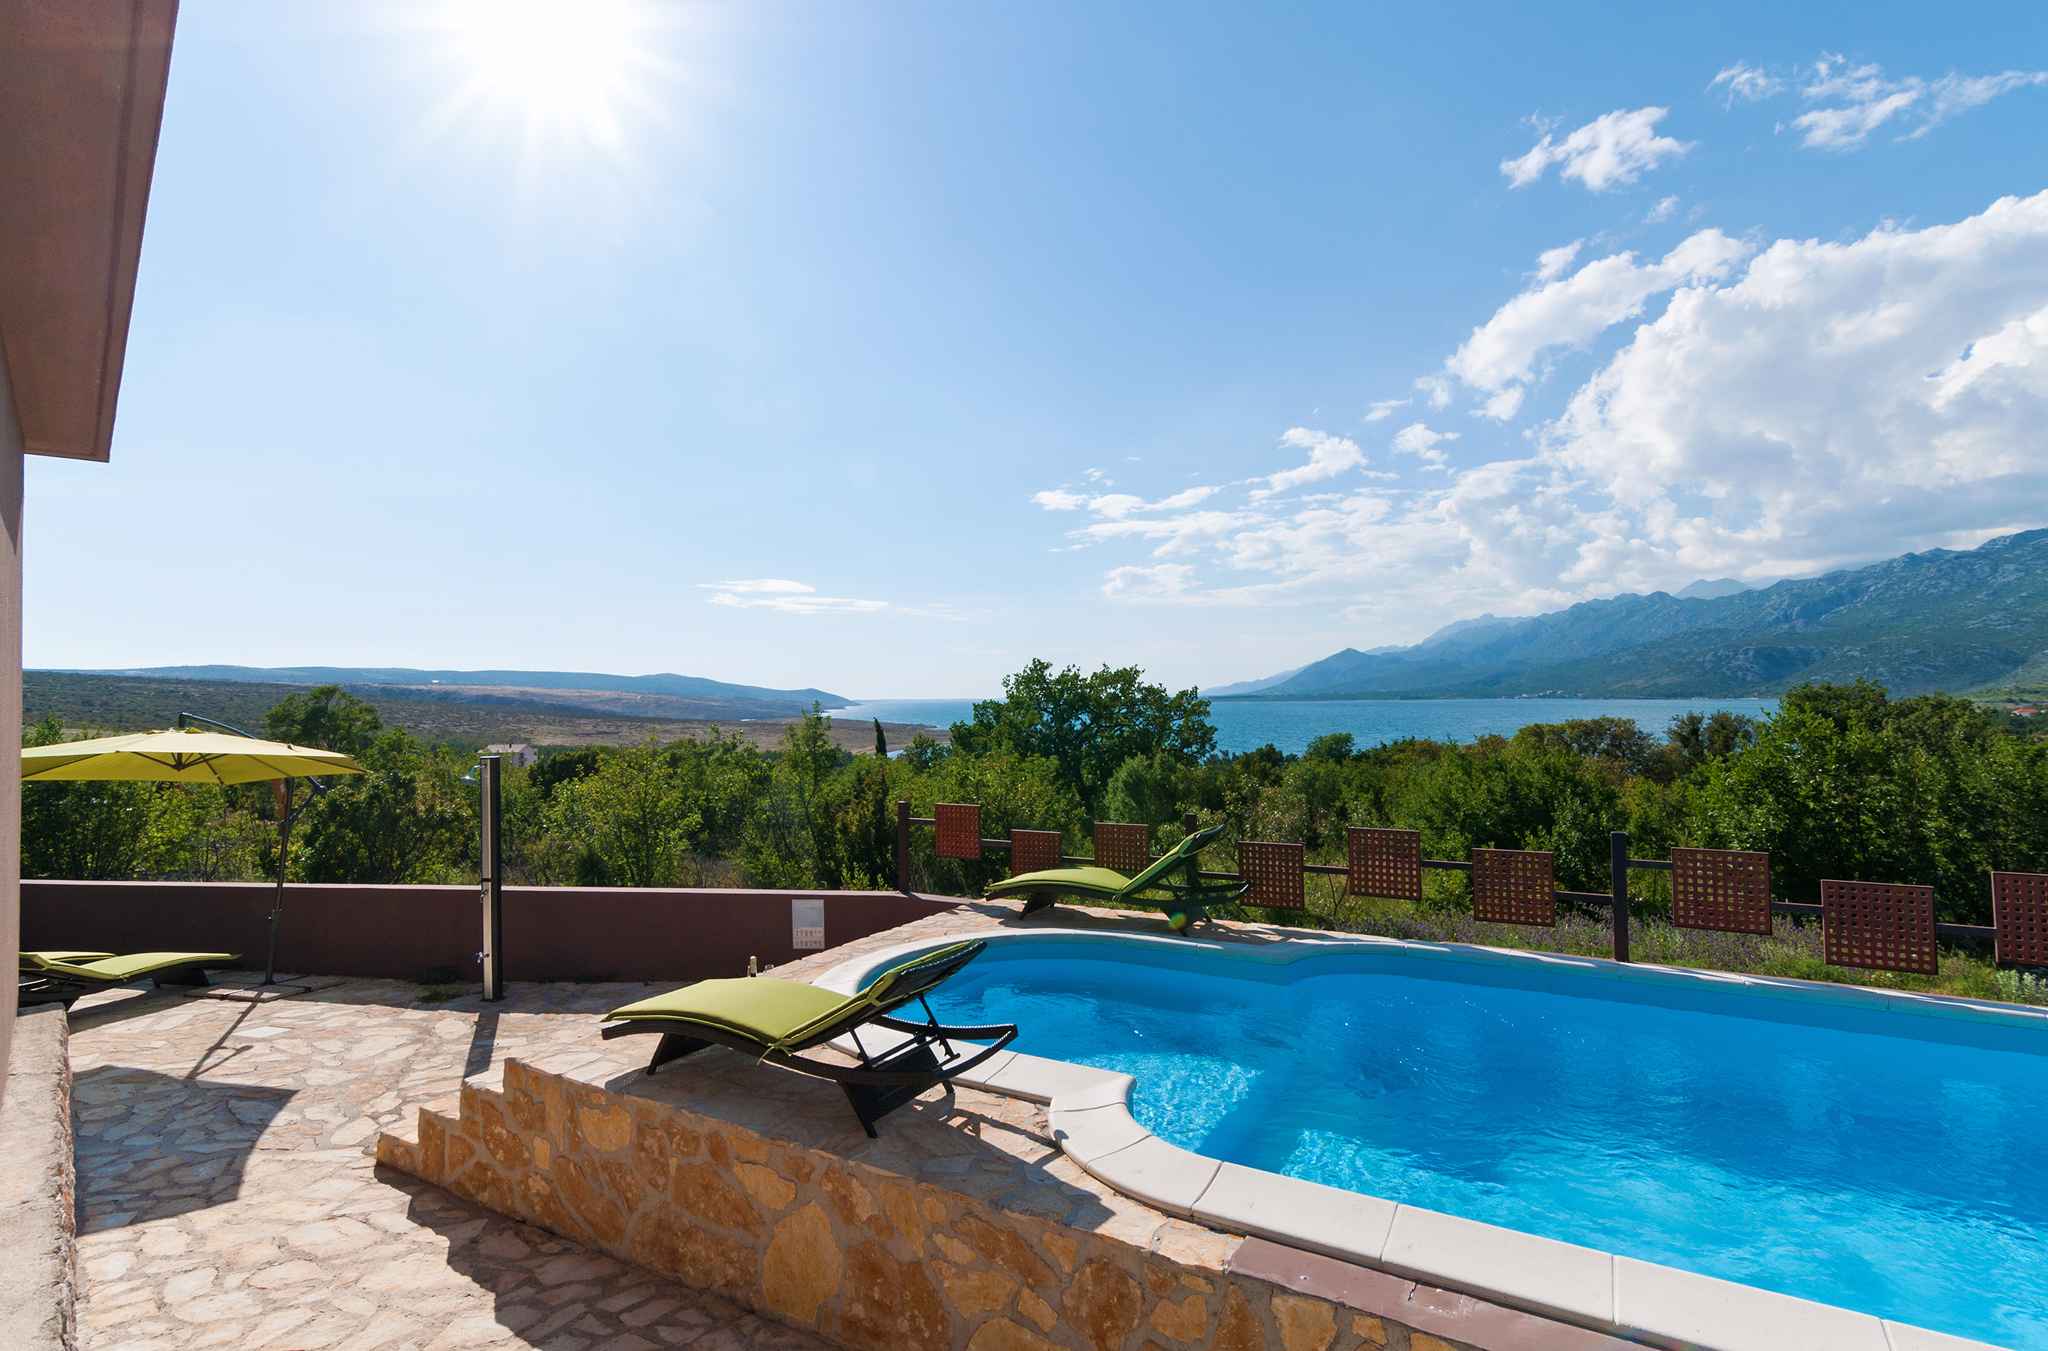 Ferienhaus für 8 Personen mit Pool und Meerbl Ferienhaus in Kroatien